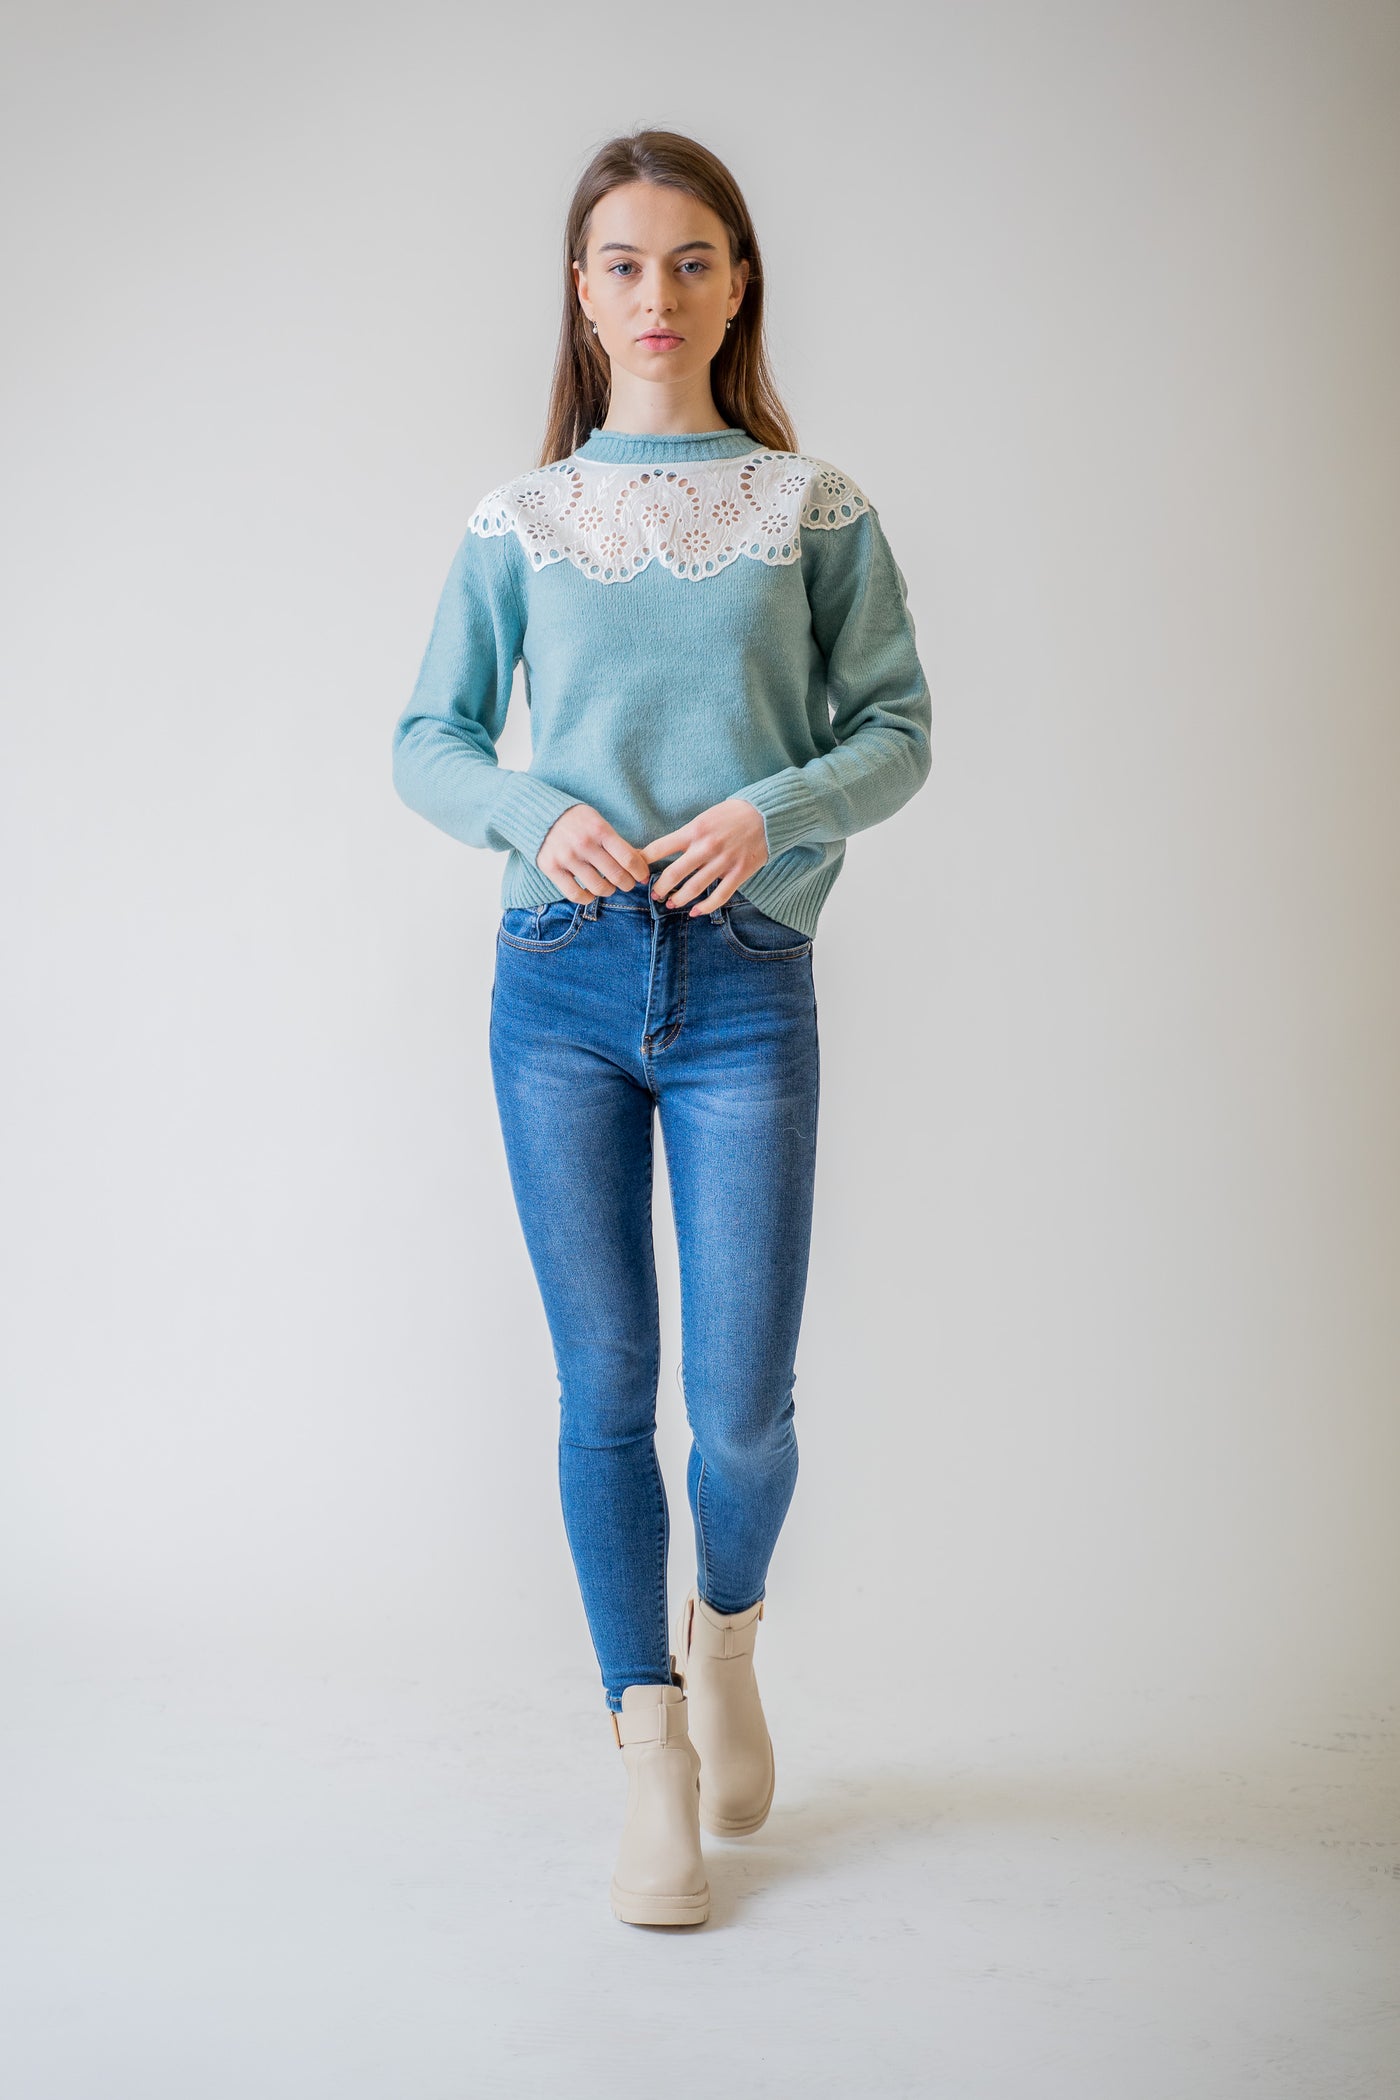 Modrý sveter s madeirovým golierom - Top